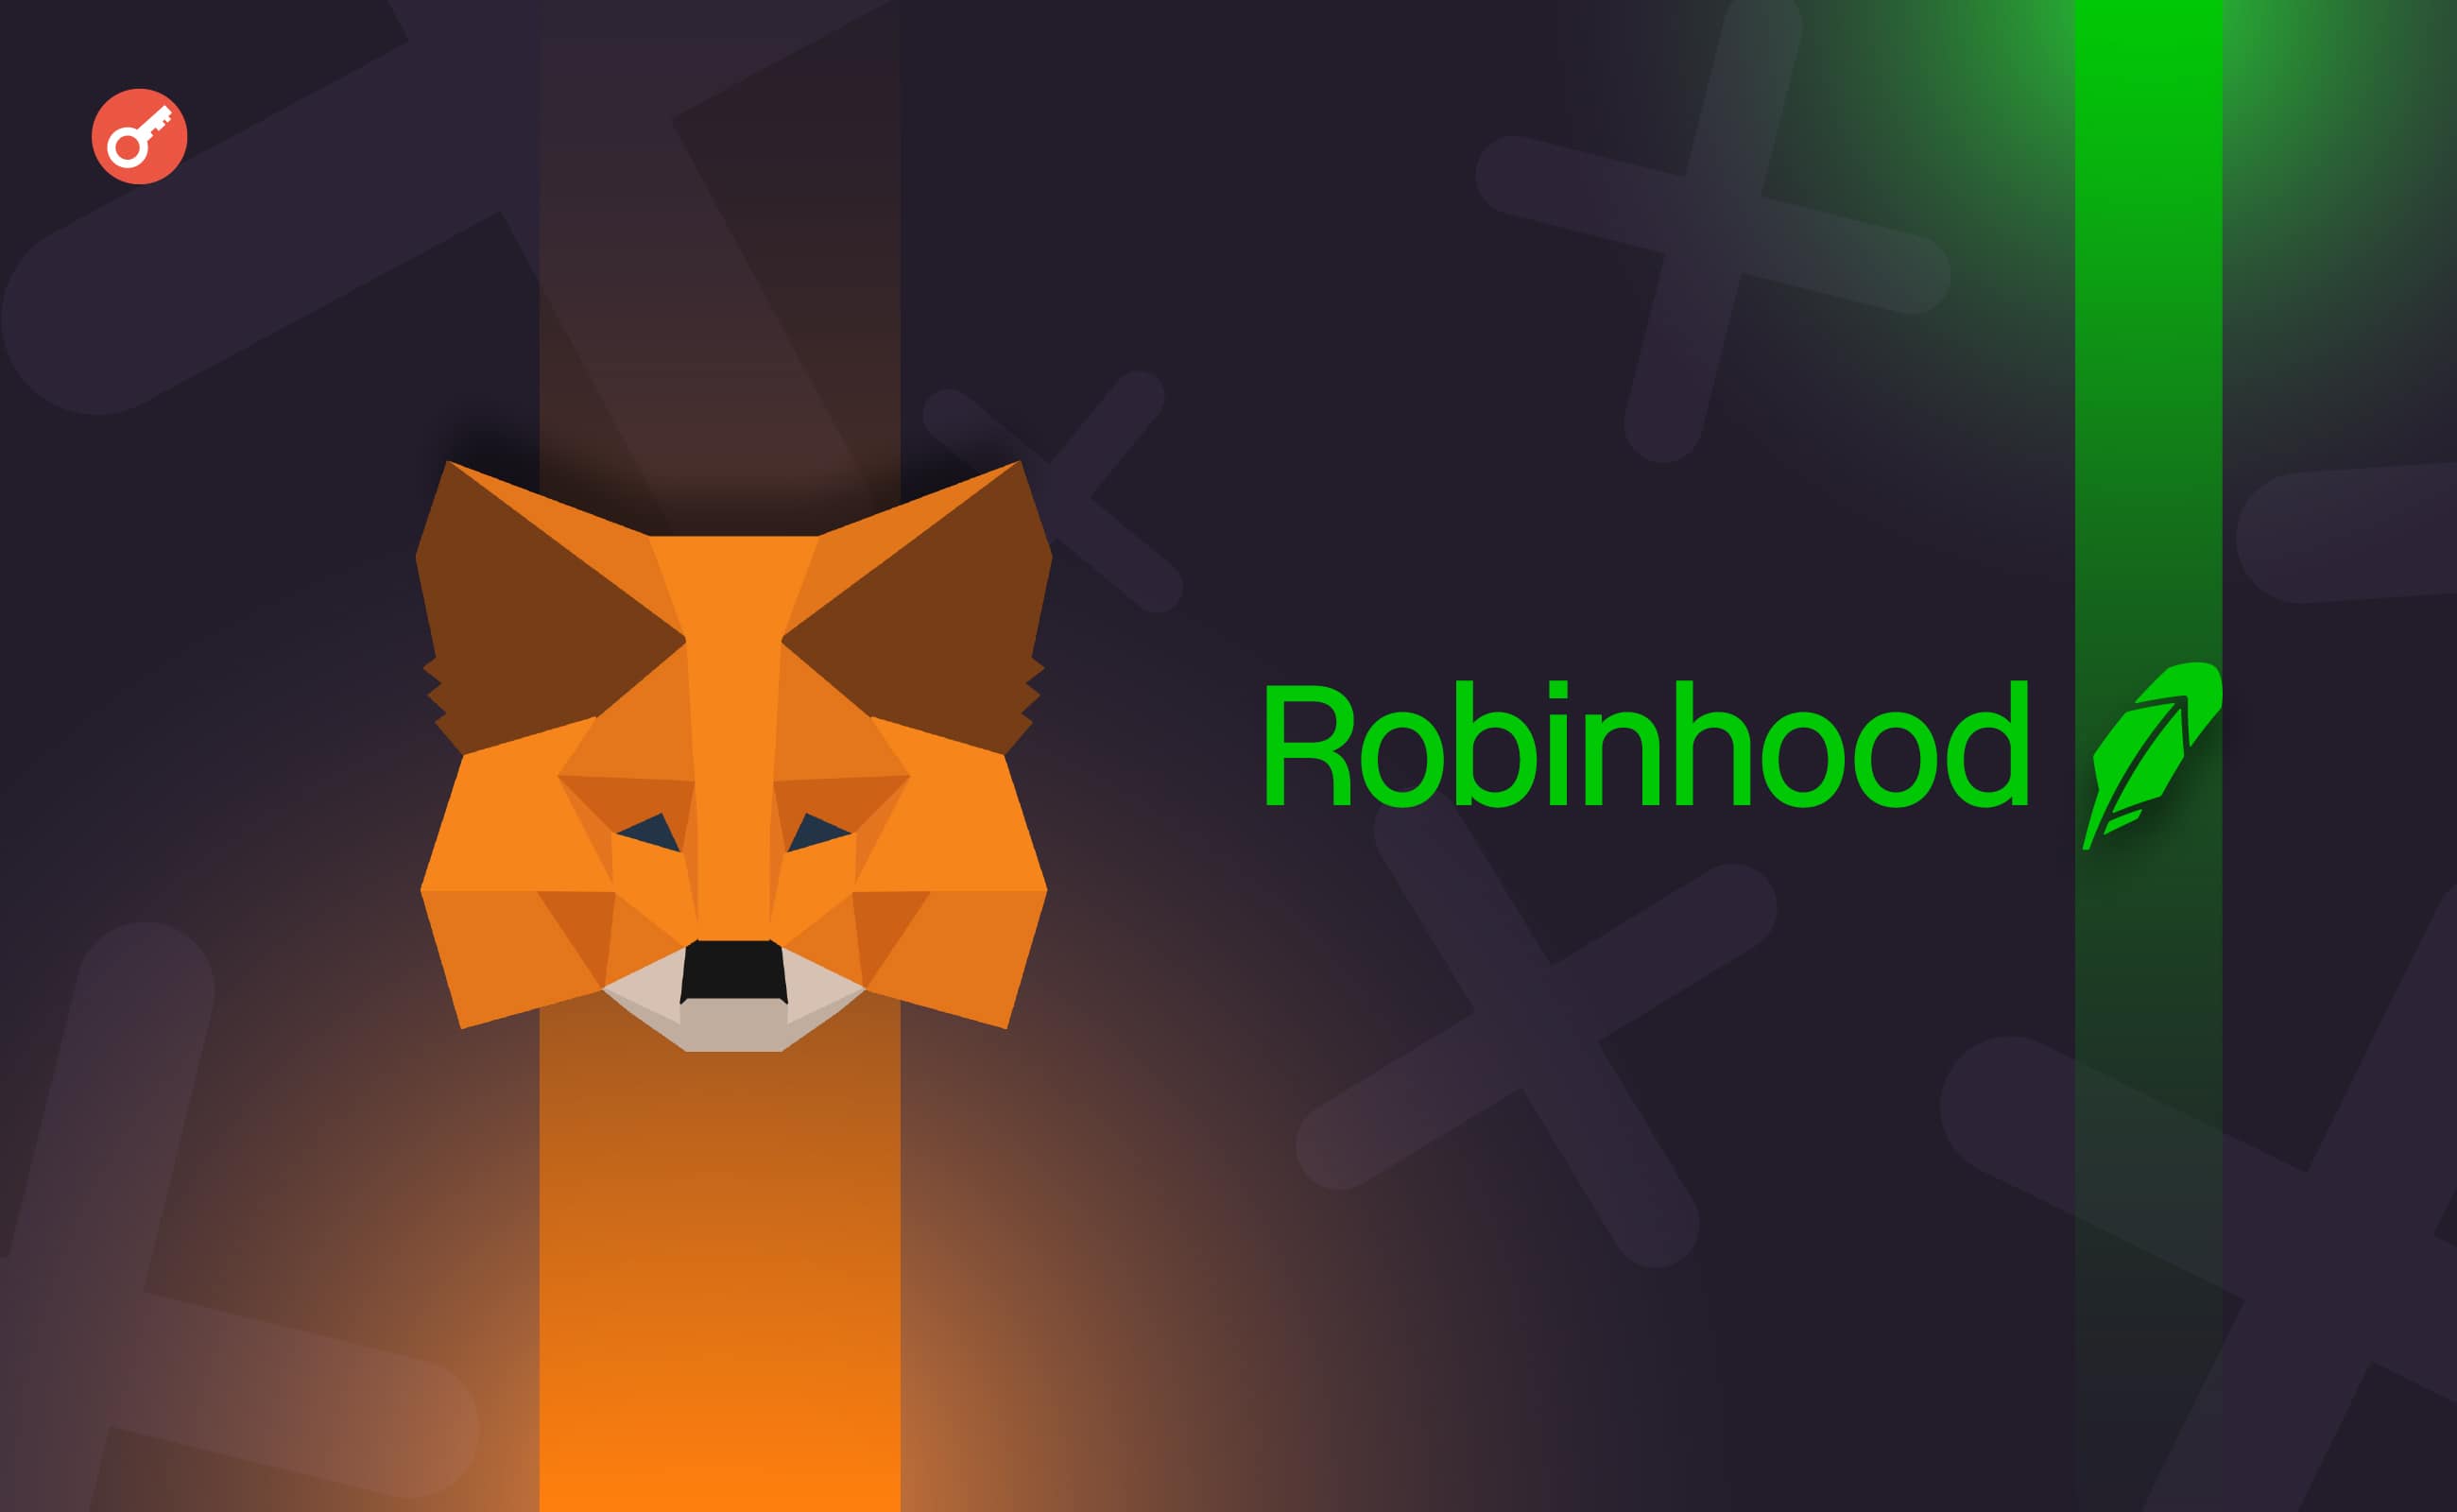 Robinhood Connect додала підтримку MetaMask для операцій з криптовалютами. Головний колаж новини.